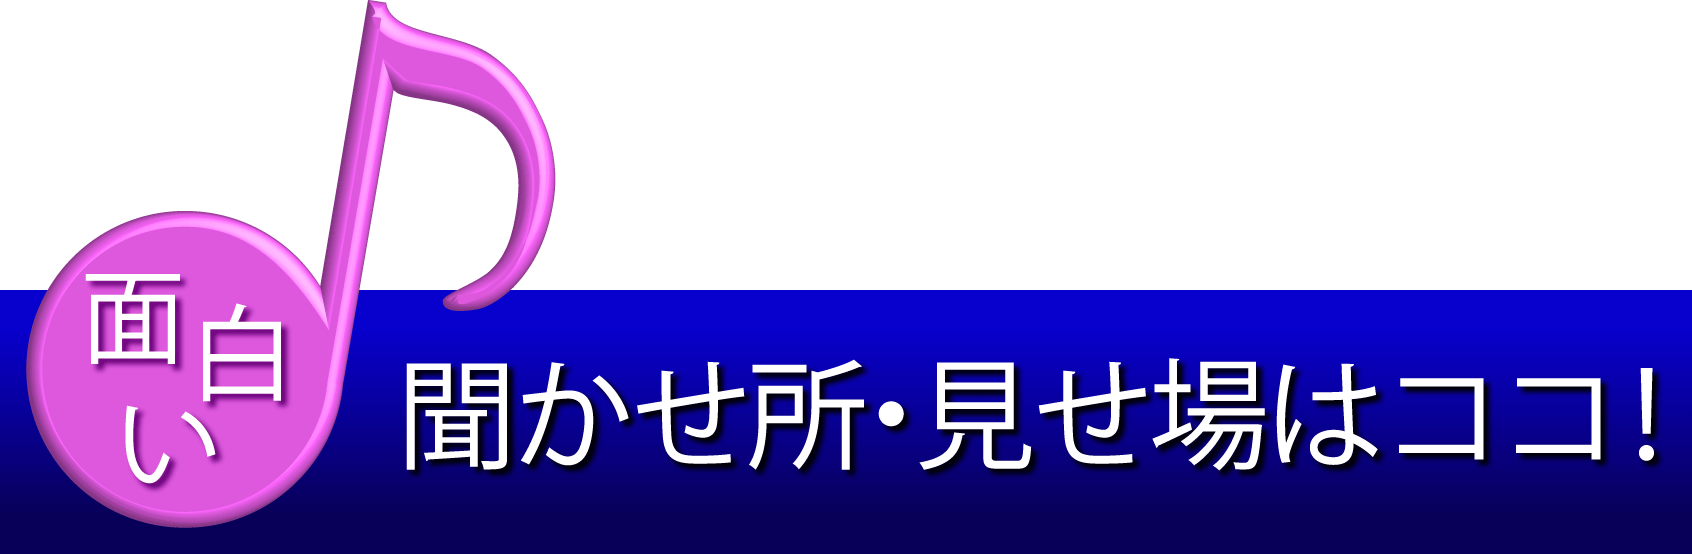 banner_HP-basic01_01_omoshiro@2x